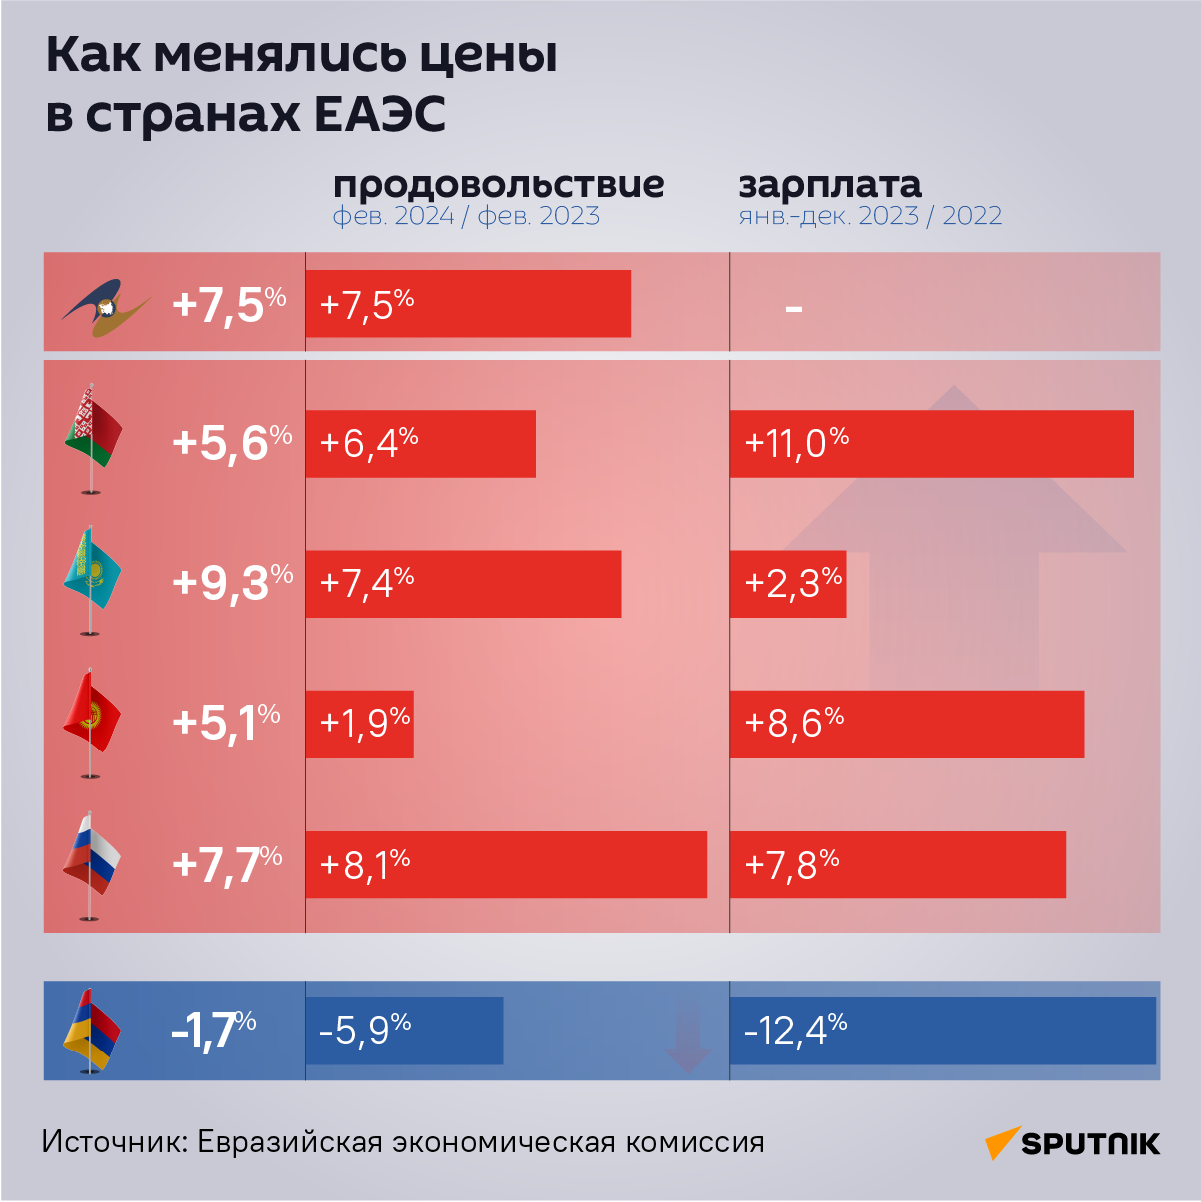 Динамика цен (февраль 2024/февраль 2023) и зарплат (январь-декабрь 2023/2022) - Sputnik Армения